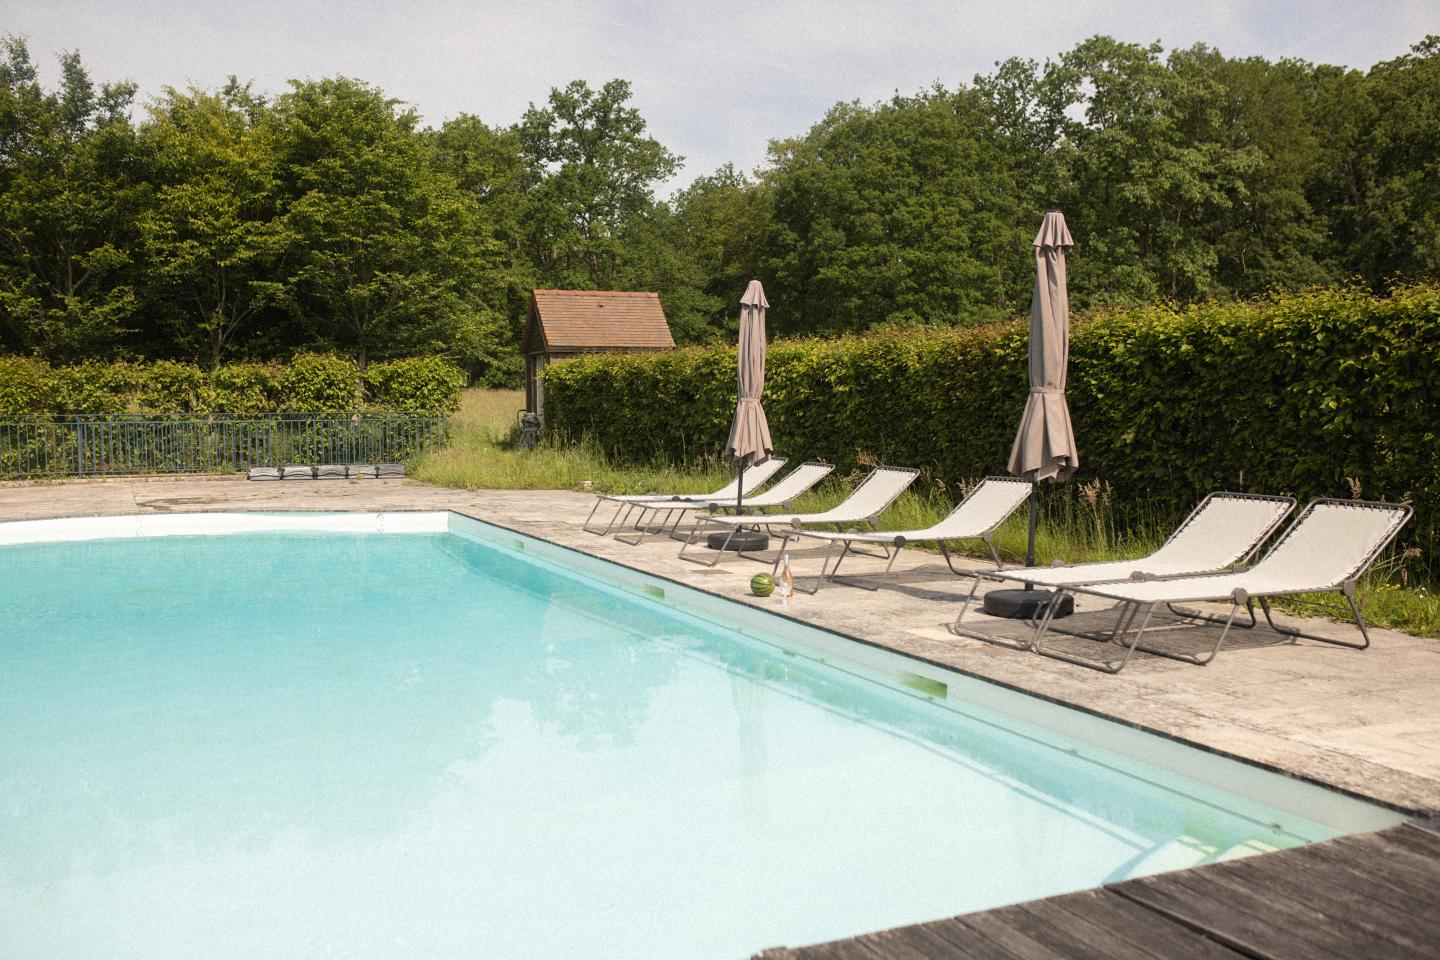 Hôte GreenGo: Location maison 15 personnes avec piscine à 50 min de Paris - Image 54